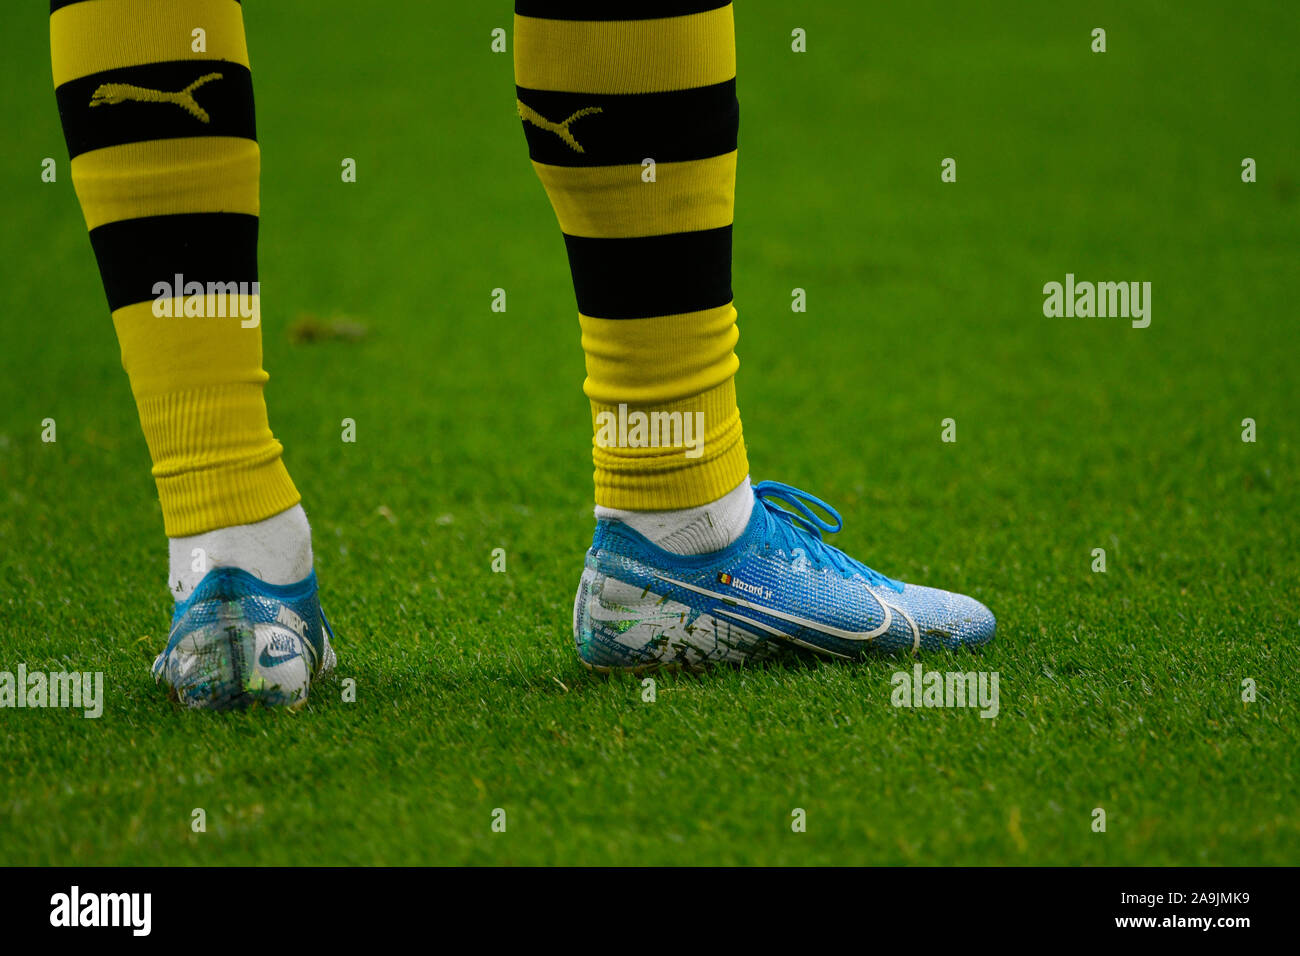 Zapatillas de fútbol nike fotografías e imágenes de alta resolución -  Página 2 - Alamy